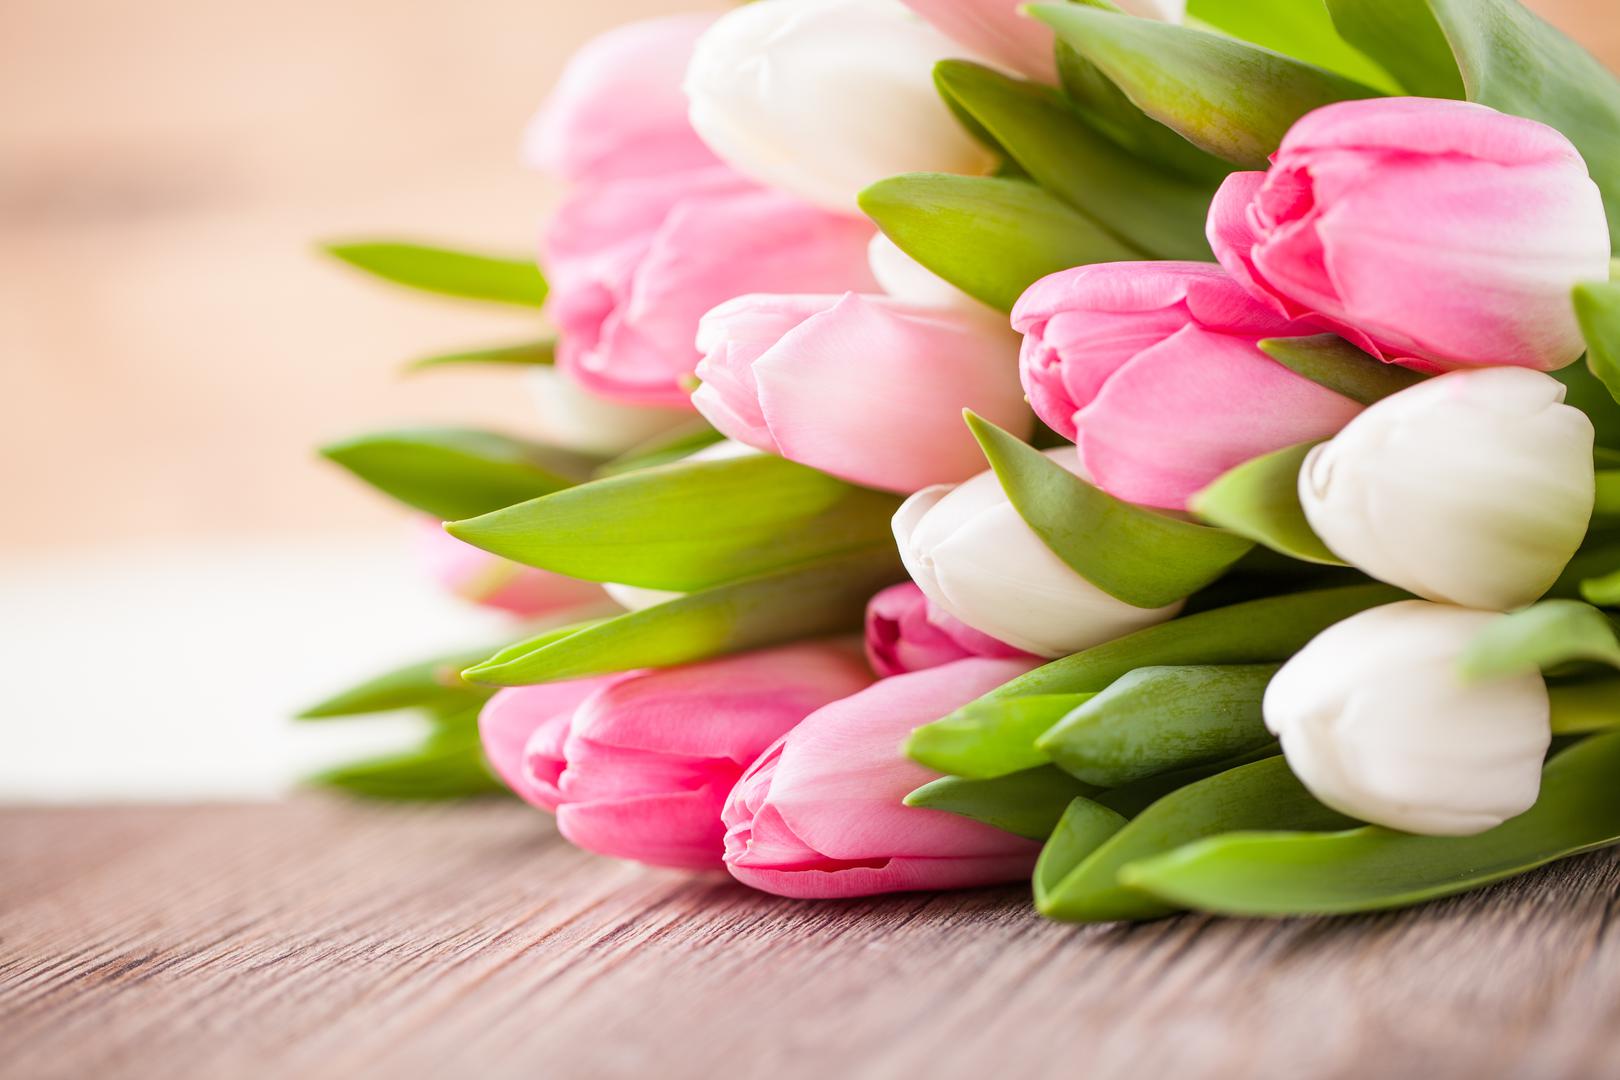 Tulipani: Za razliku od mnogih drugih cvjetova gdje je otrov uglavnom u lukovici, prisutan je u svim dijelovima tulipana, poput stabljike, lišća i samog cvijeta. Ako ga vaš pas konzumira, to može dovesti do nuspojava uključujući proljev, pojačano lučenje sline, pa čak i depresiju.